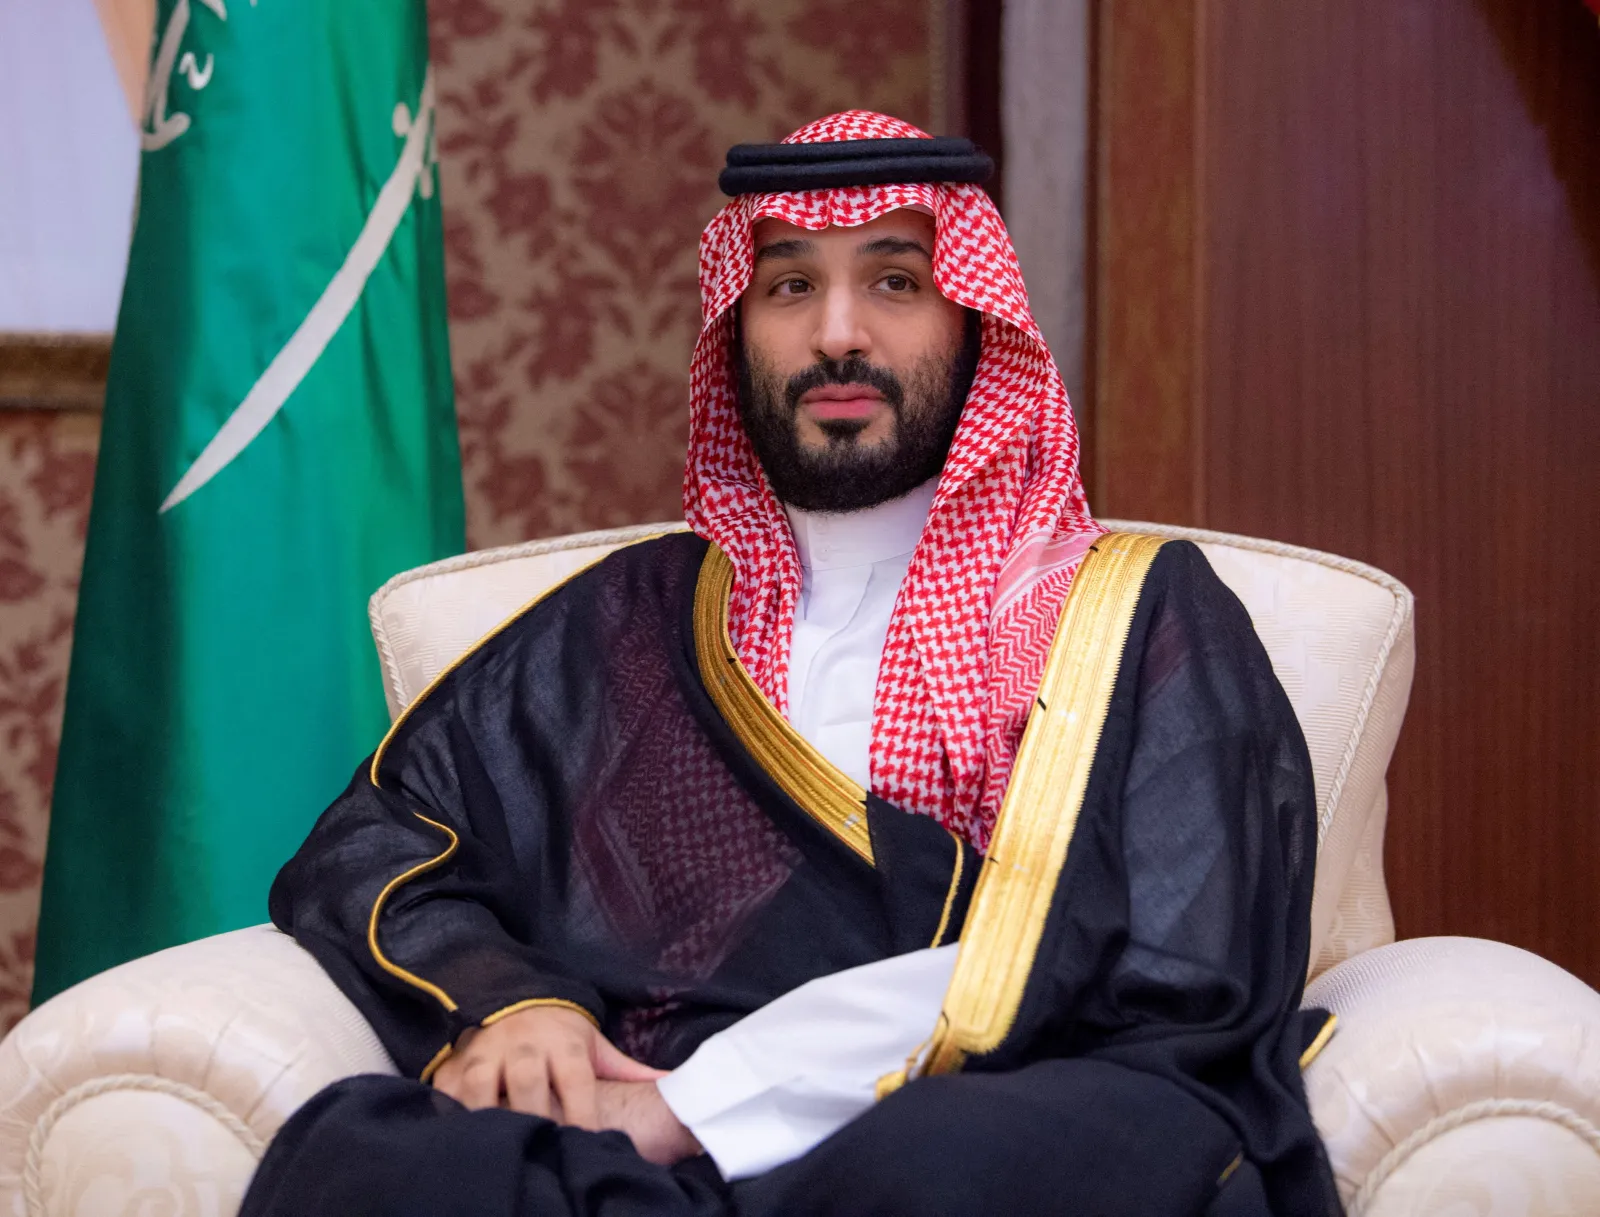 правитель саудовской аравии сейчас и его семья